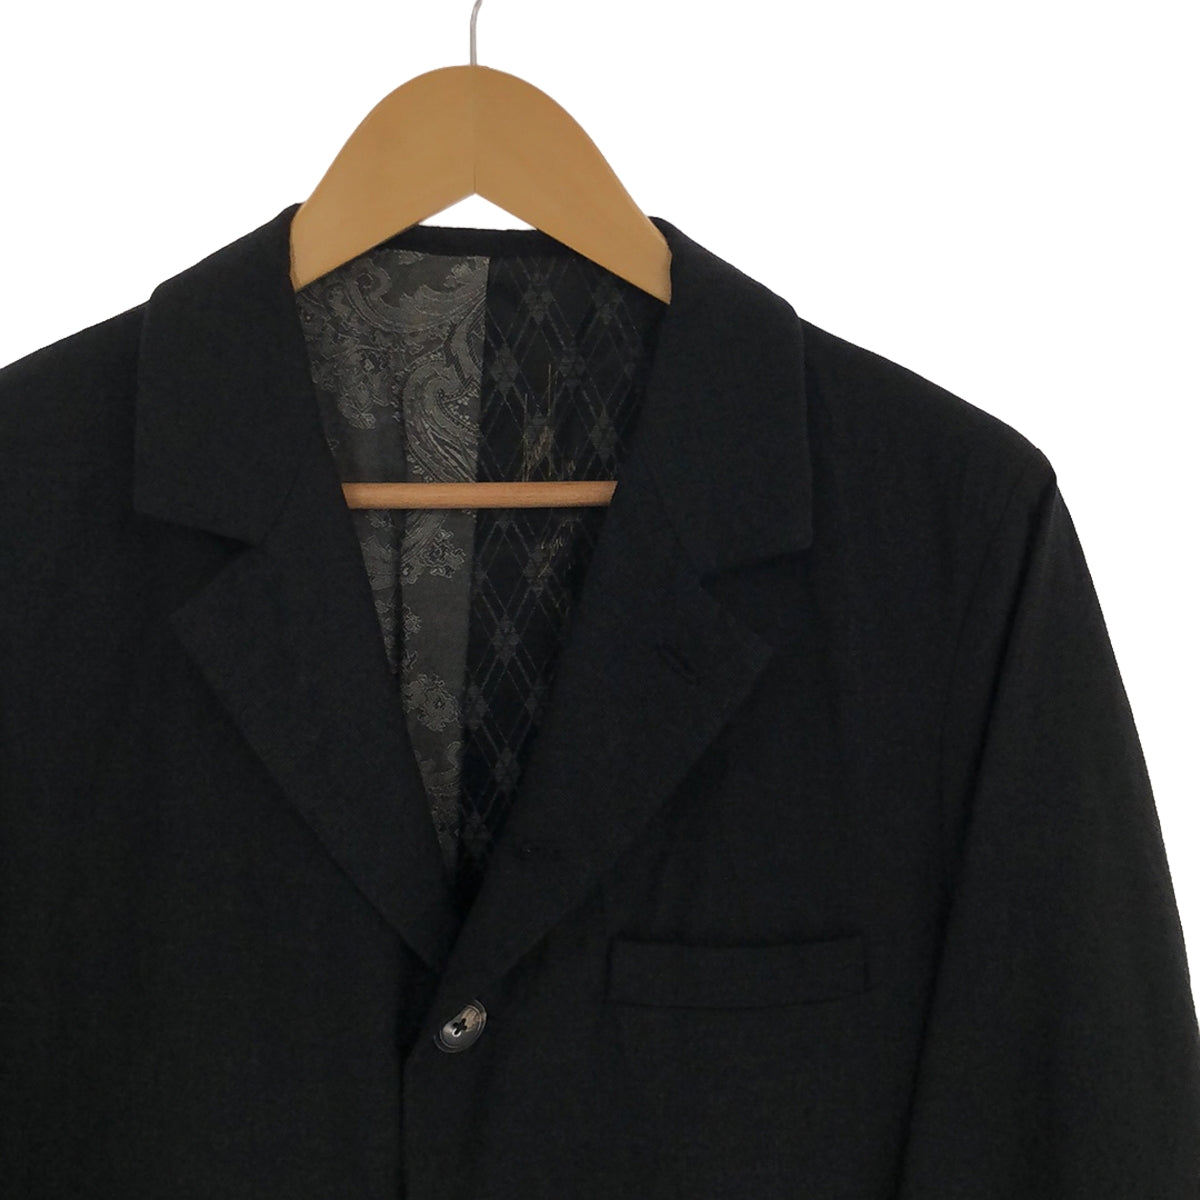 GEOFFREY B.SMALL / ジェフリーBスモール | L. Parisotto wool & silk suiting  jacket × trouser / セットアップ シングルジャケット × スラックスパンツ / 総裏地 | S/44 | メンズ